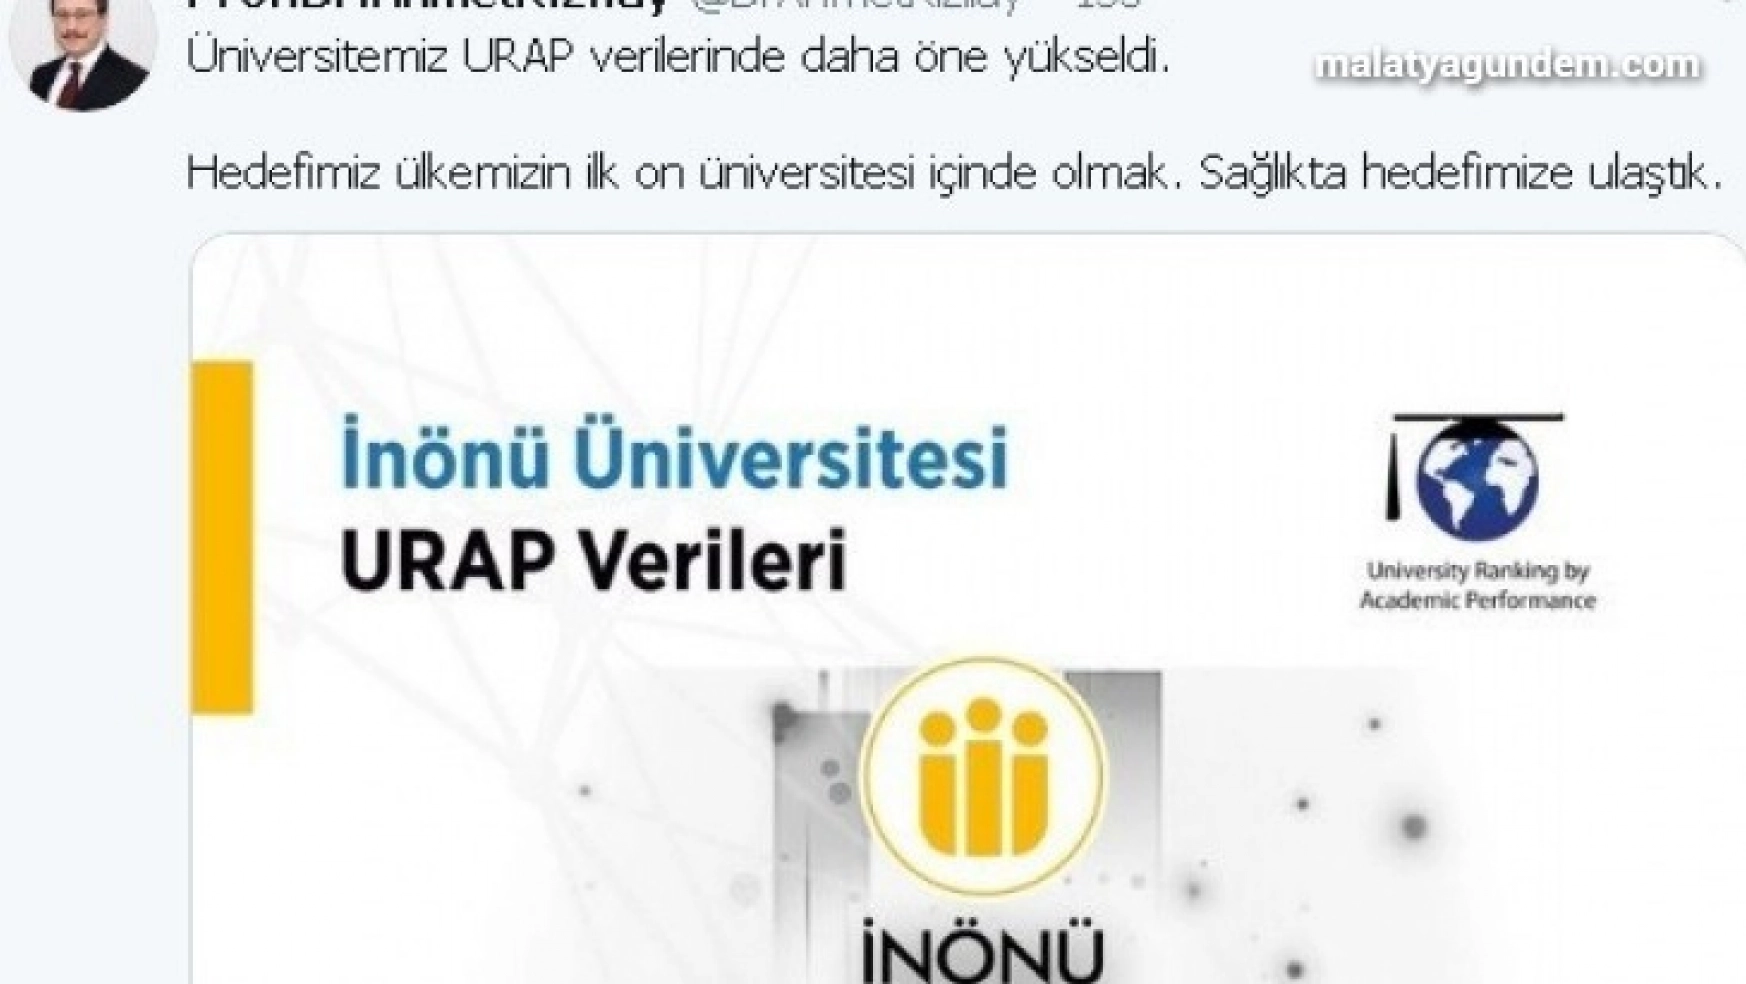 İnönü üniversitesi URAP'ta öne çıktı